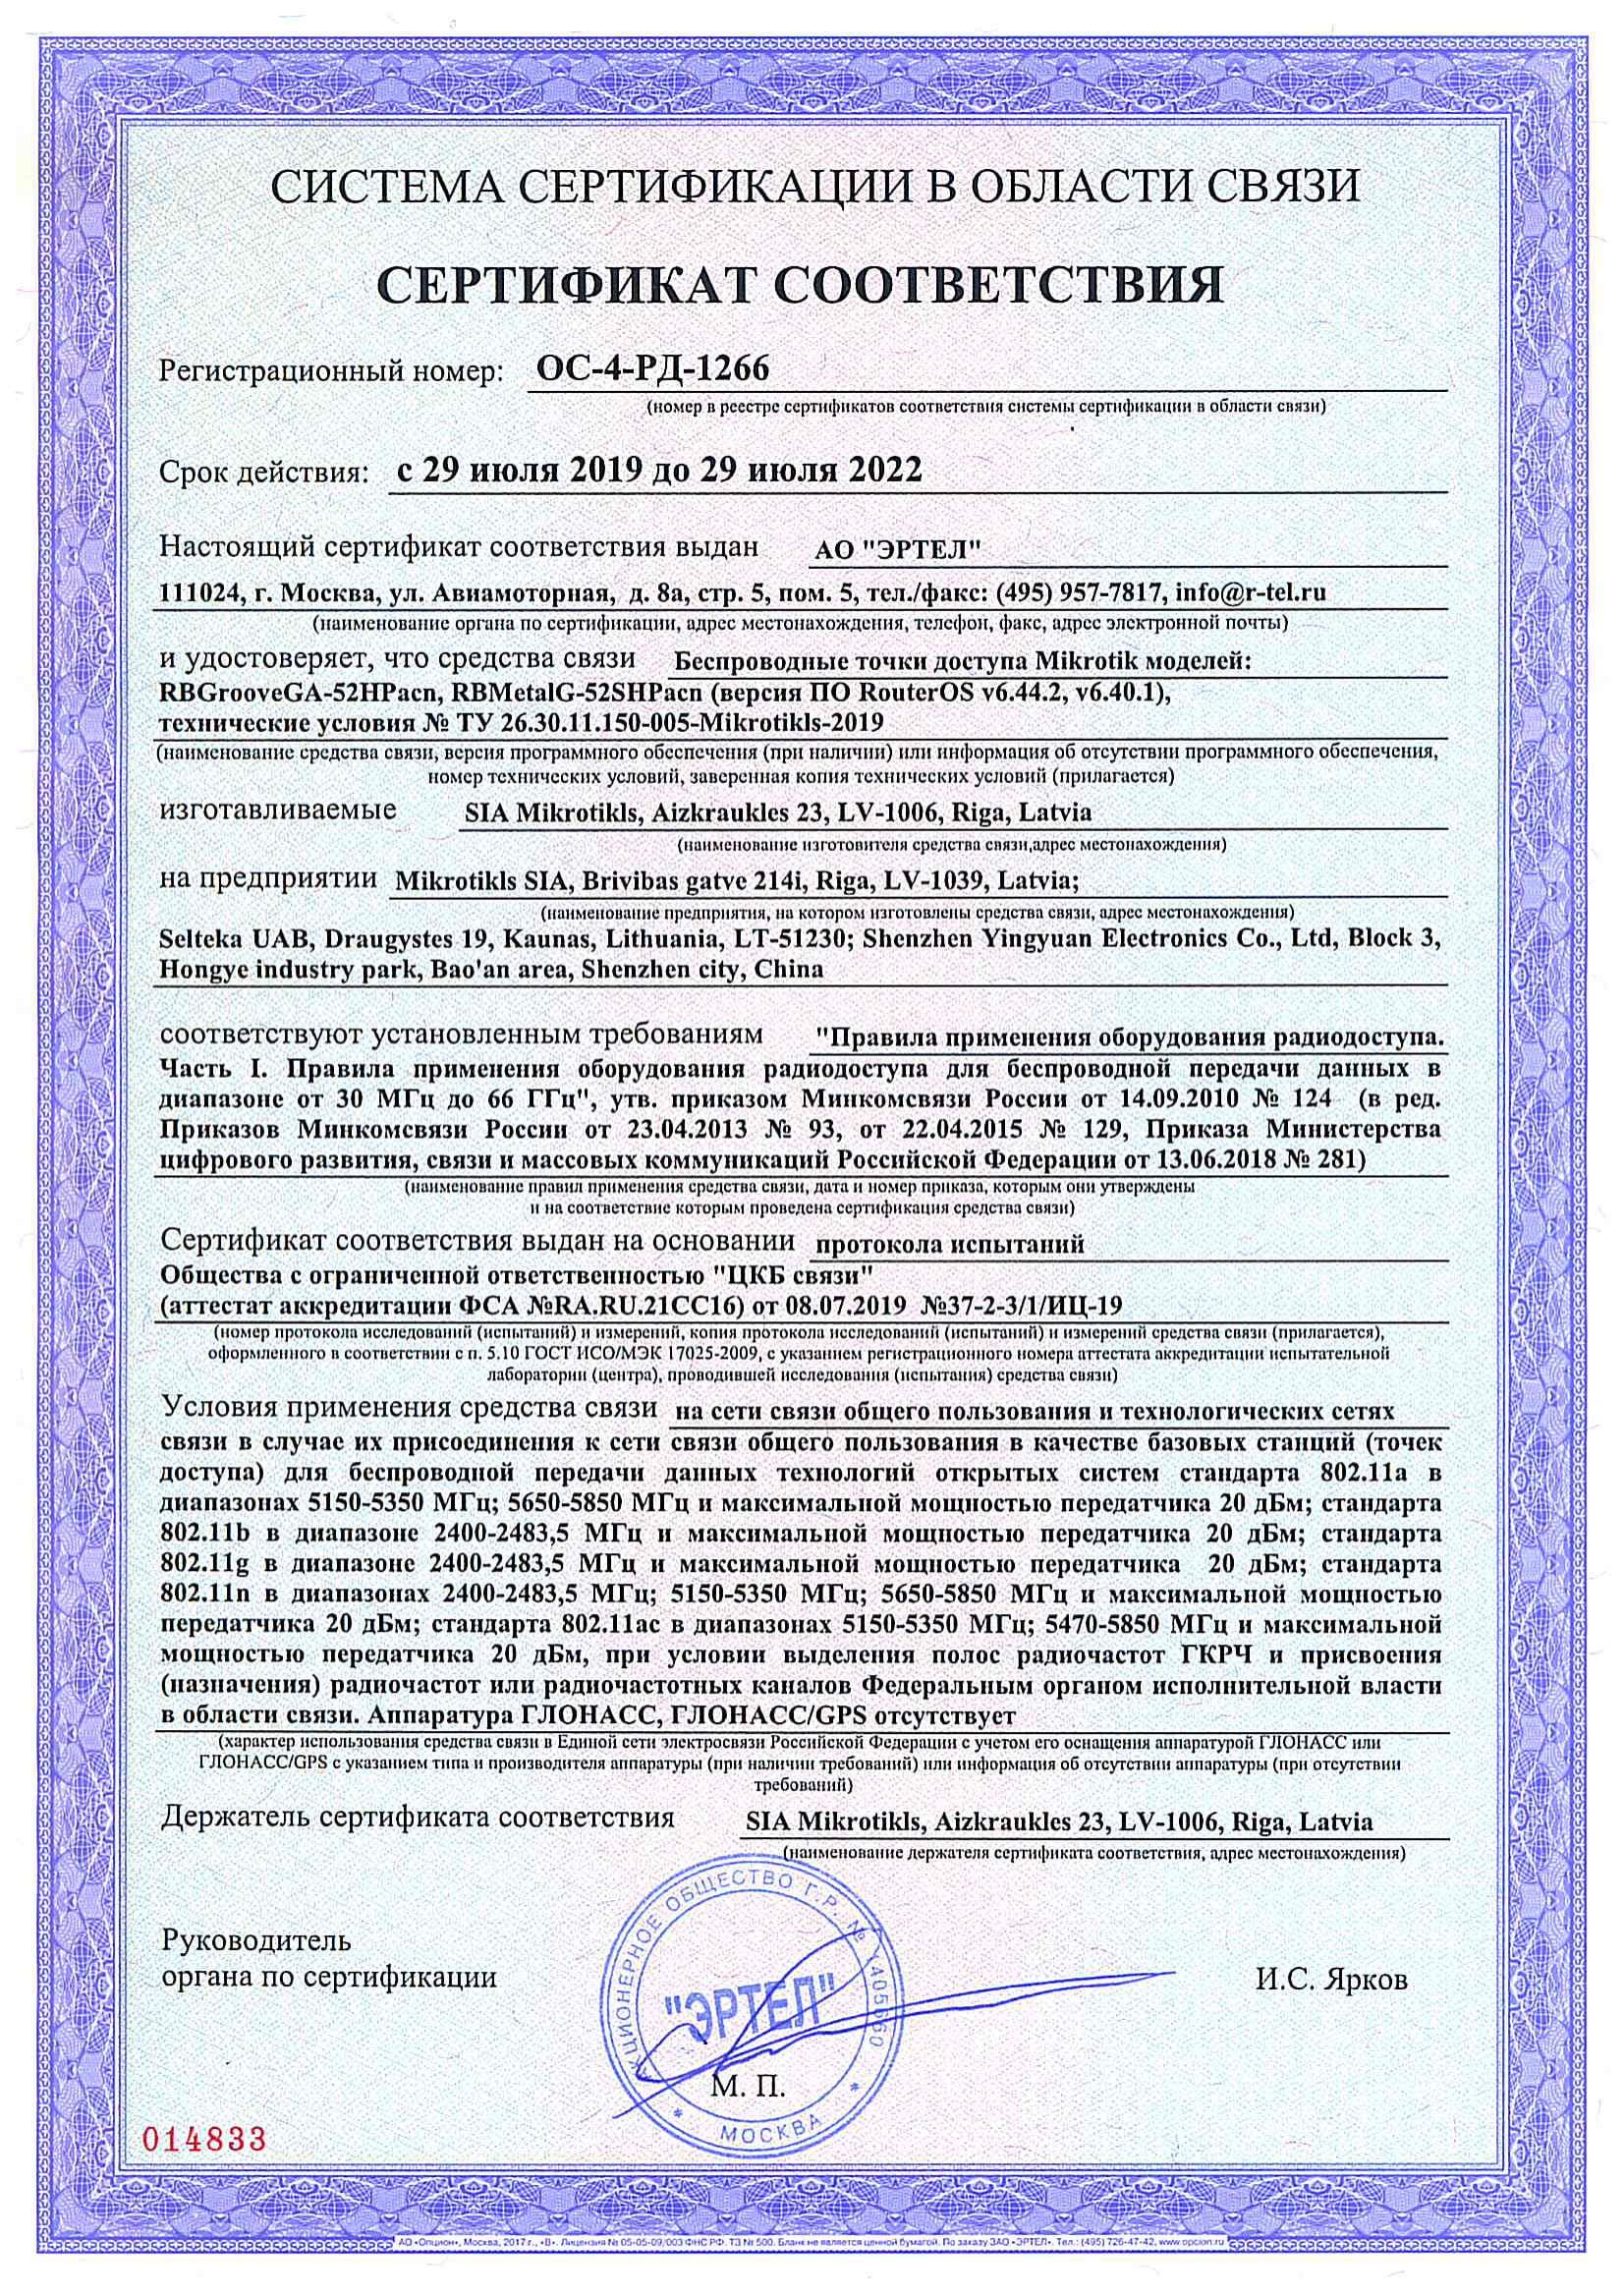 Сертификат соответствия в области связи ОС-4-РД-1266